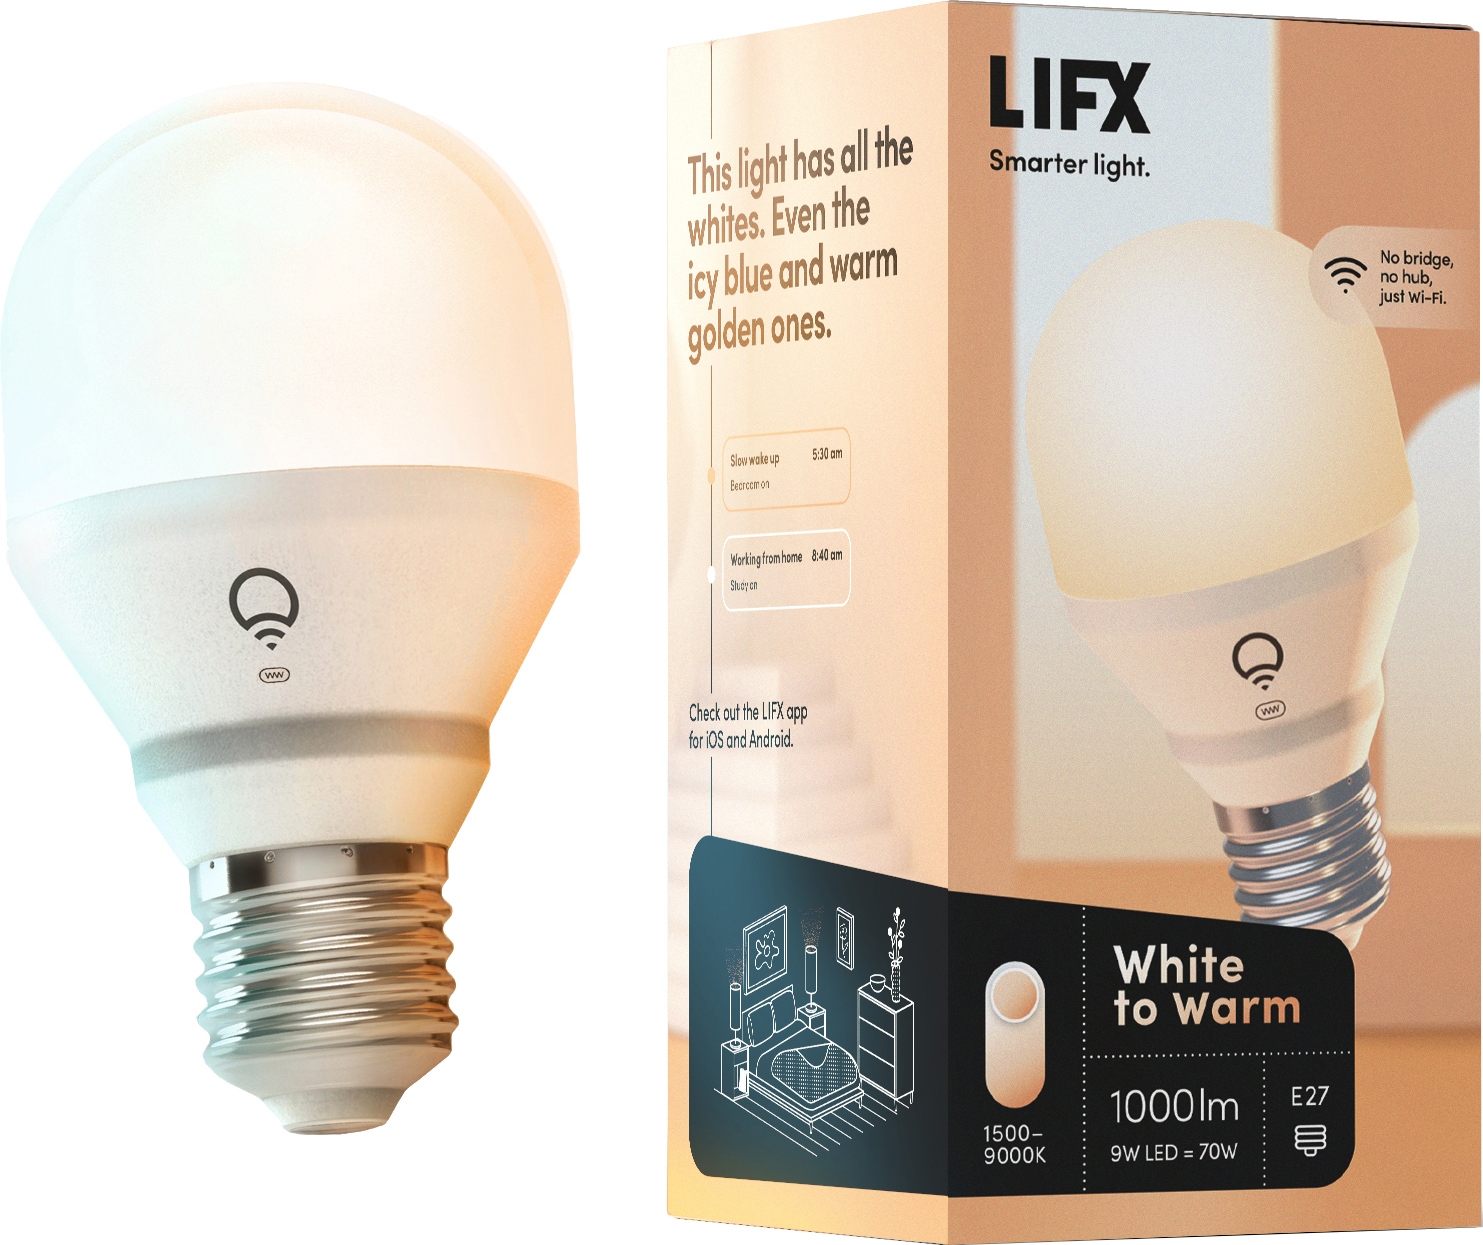 Lifx White to Warm LED-pære E27 - Elkjøp